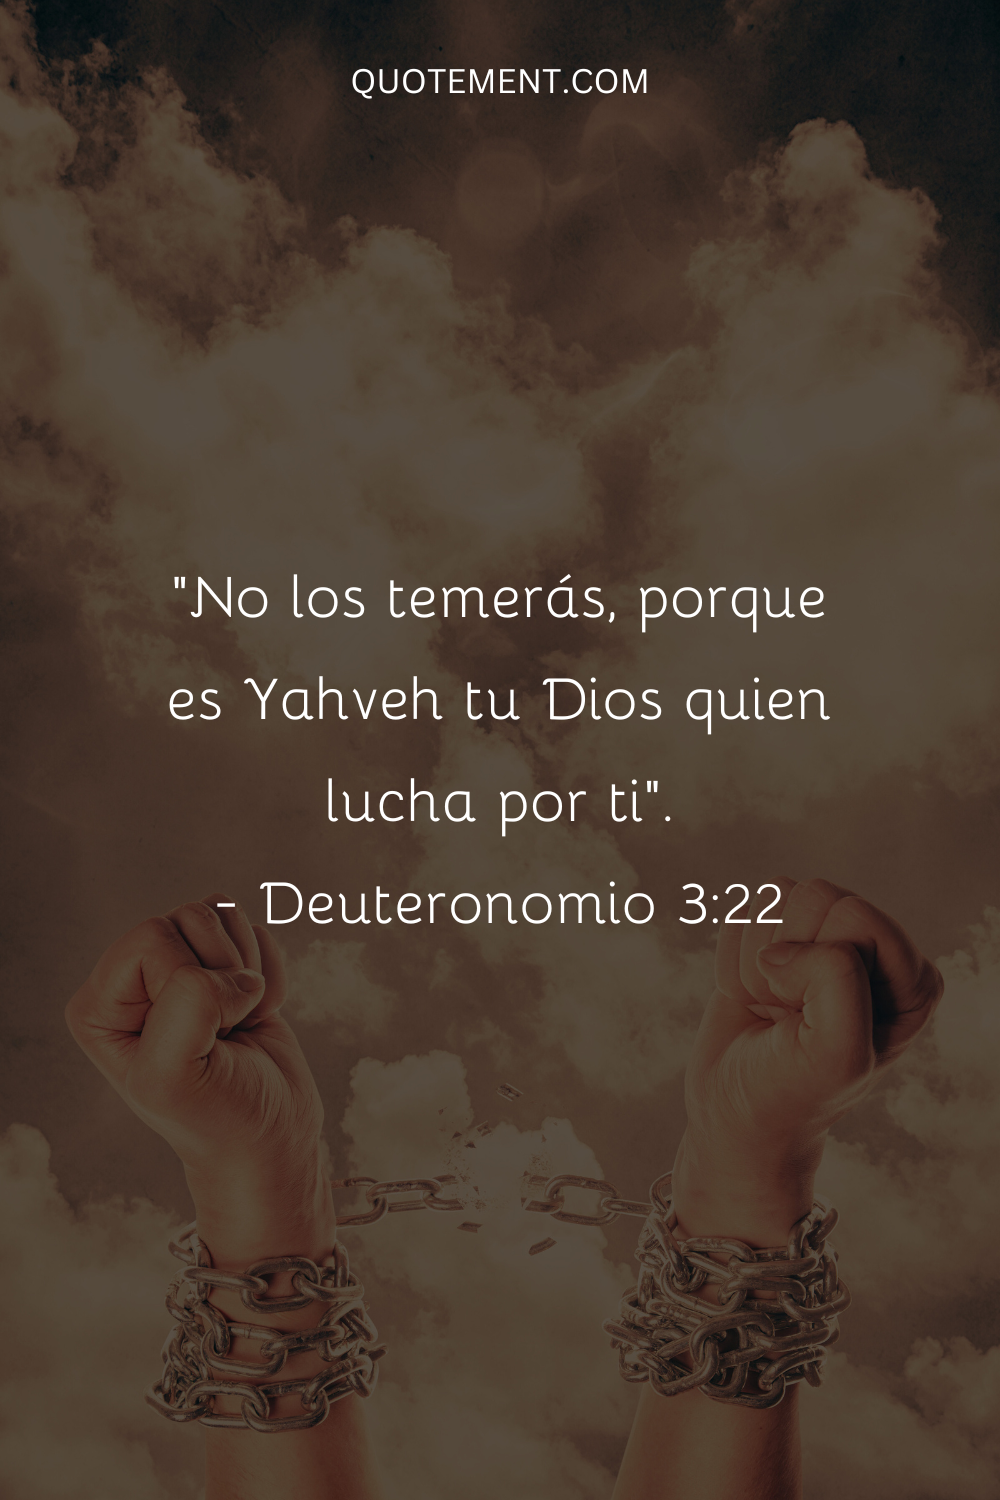 "No les temerás, porque es Yahveh tu Dios quien lucha por ti". - Deuteronomio 322